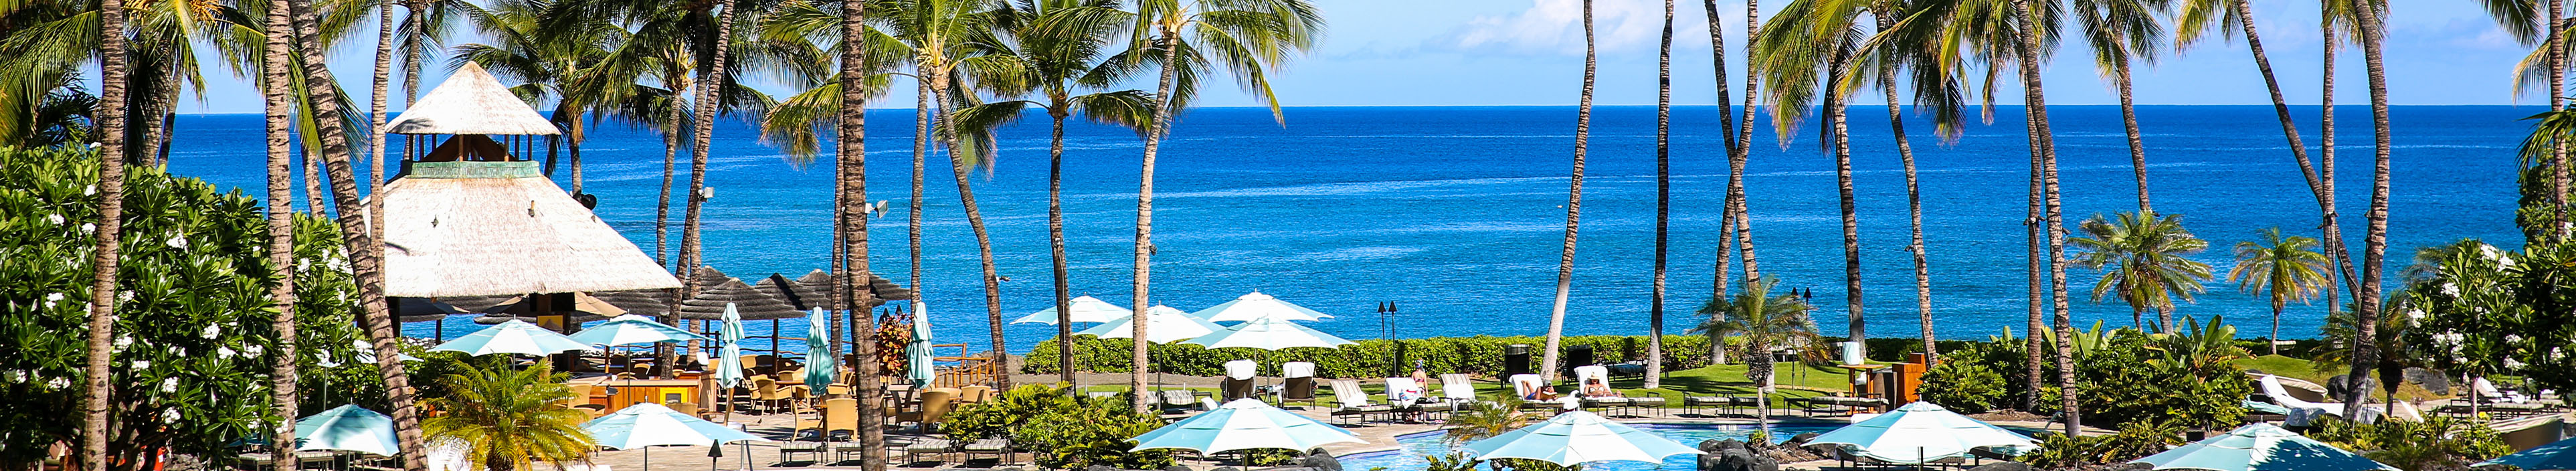 Palmen, ein Hoteltool, Sonnenschirme, und Liegen auf Hawaii, im Hintergrund das Meer.